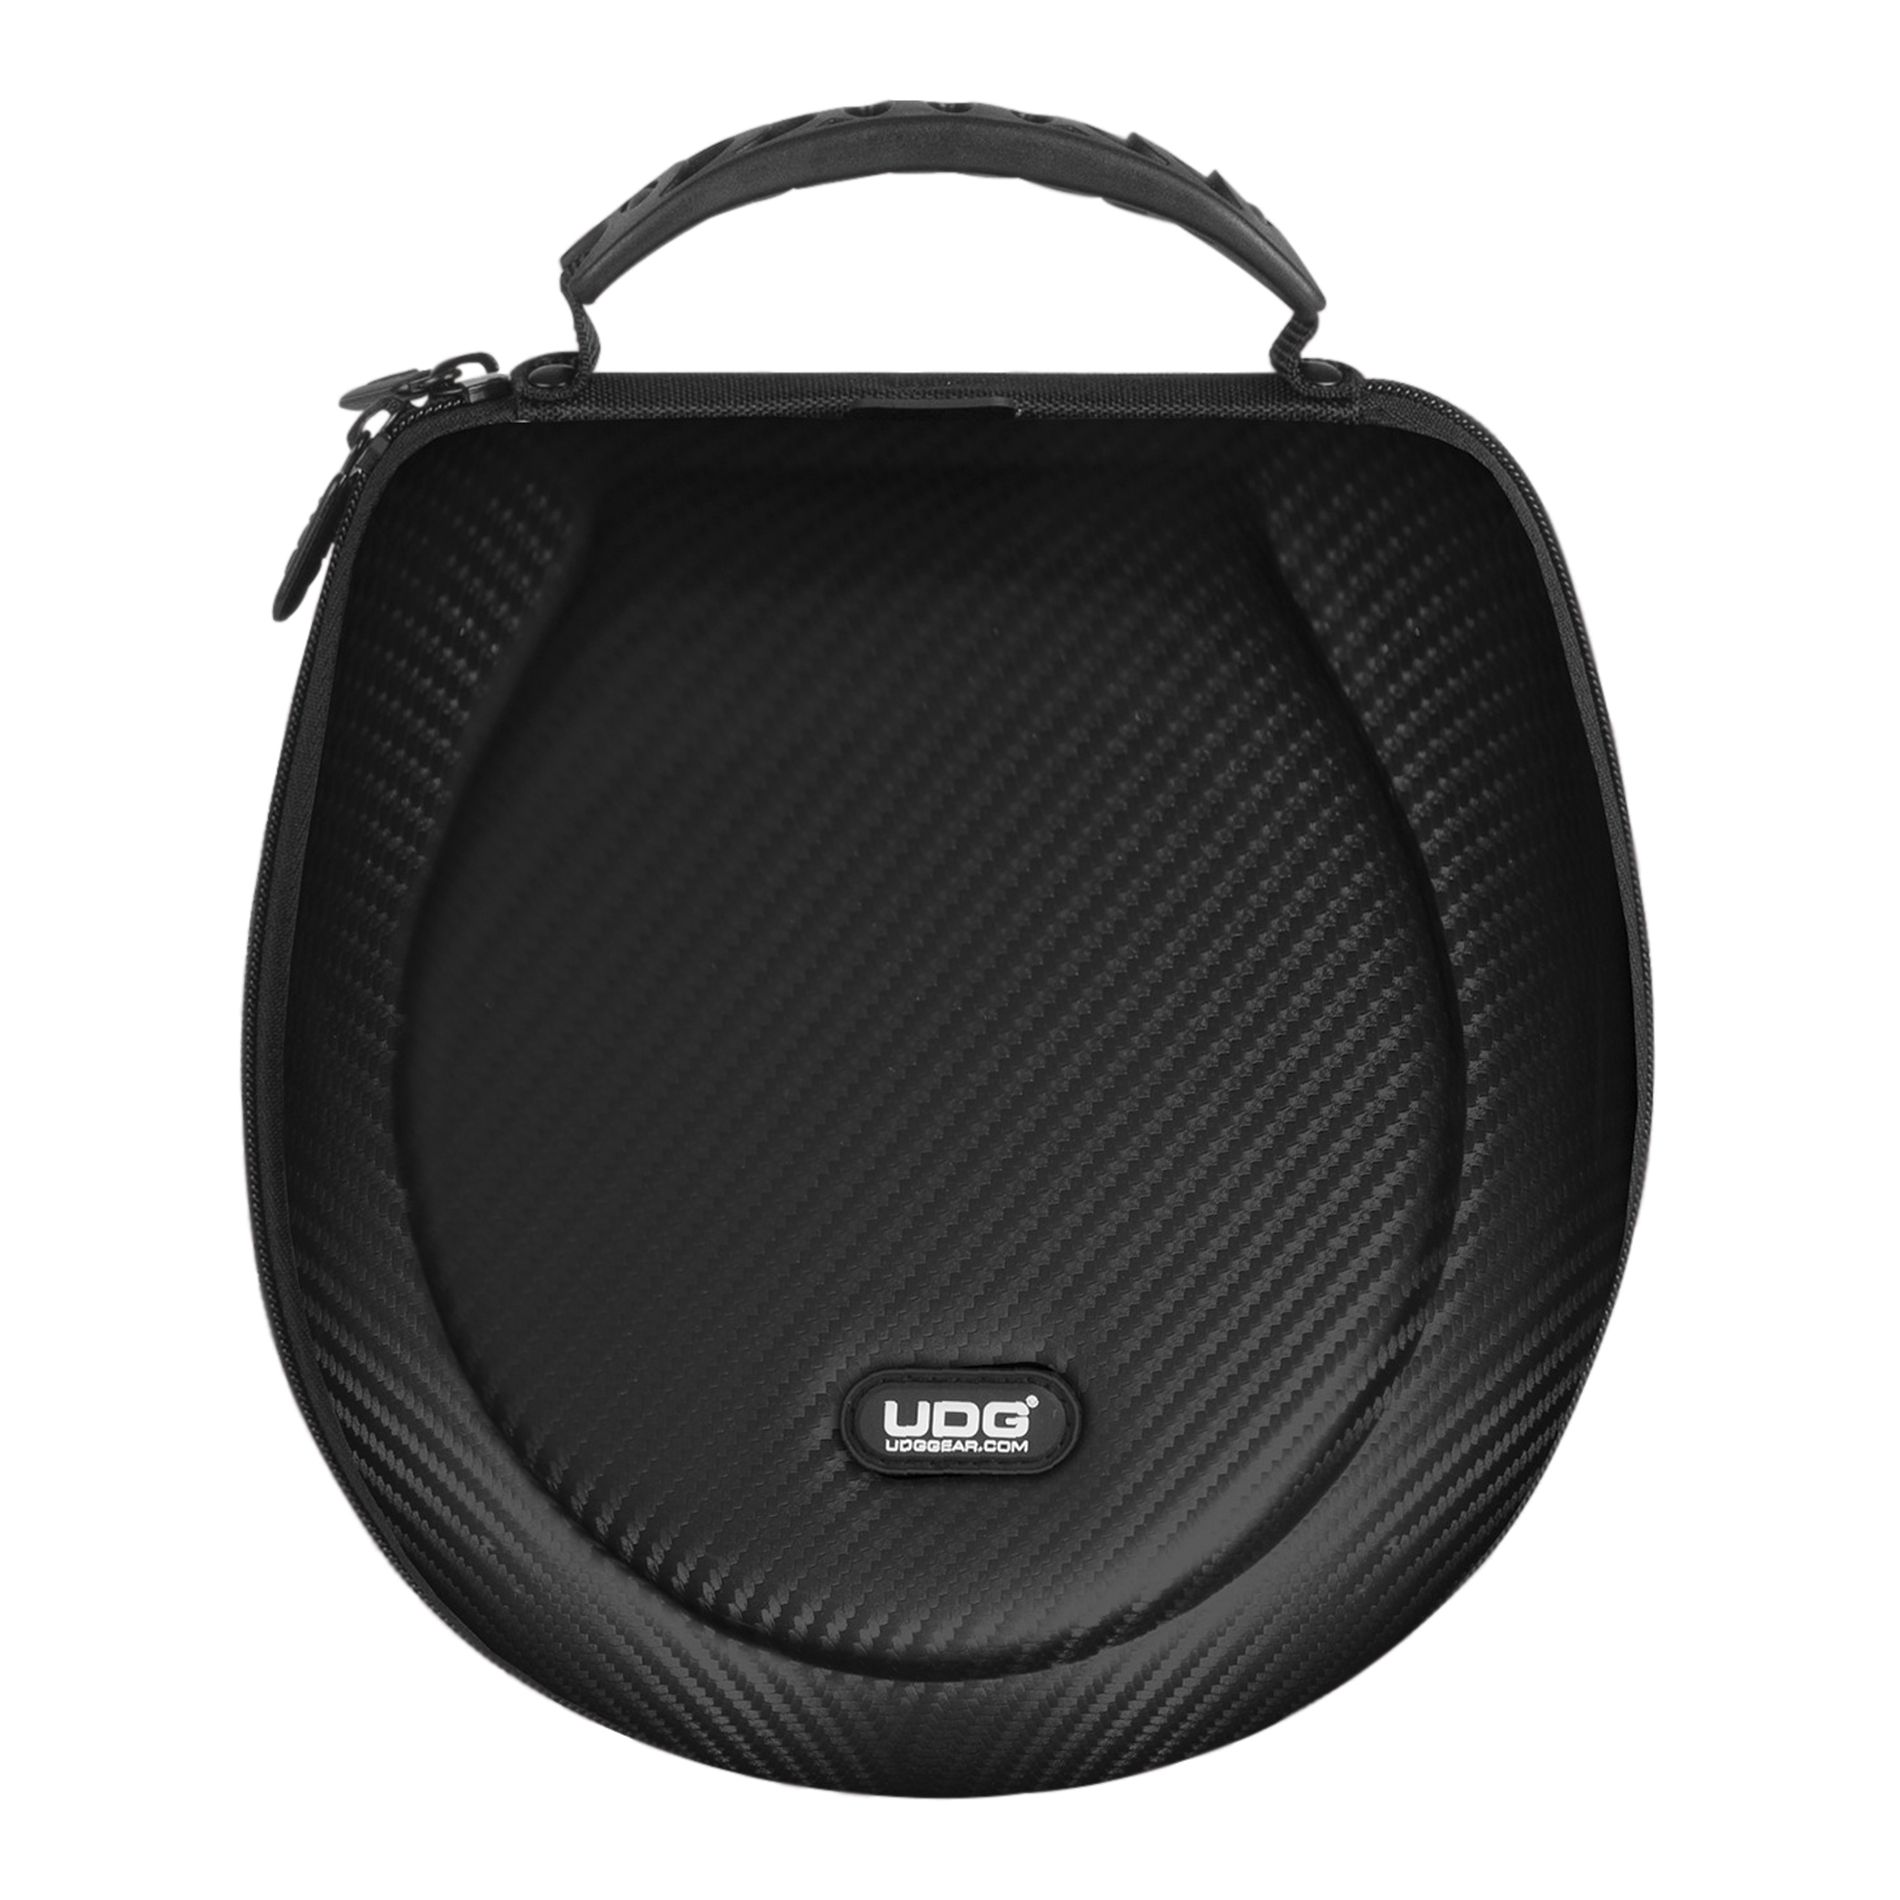 Udg U 8202 Bl - Case & bag for headphone - Variation 2